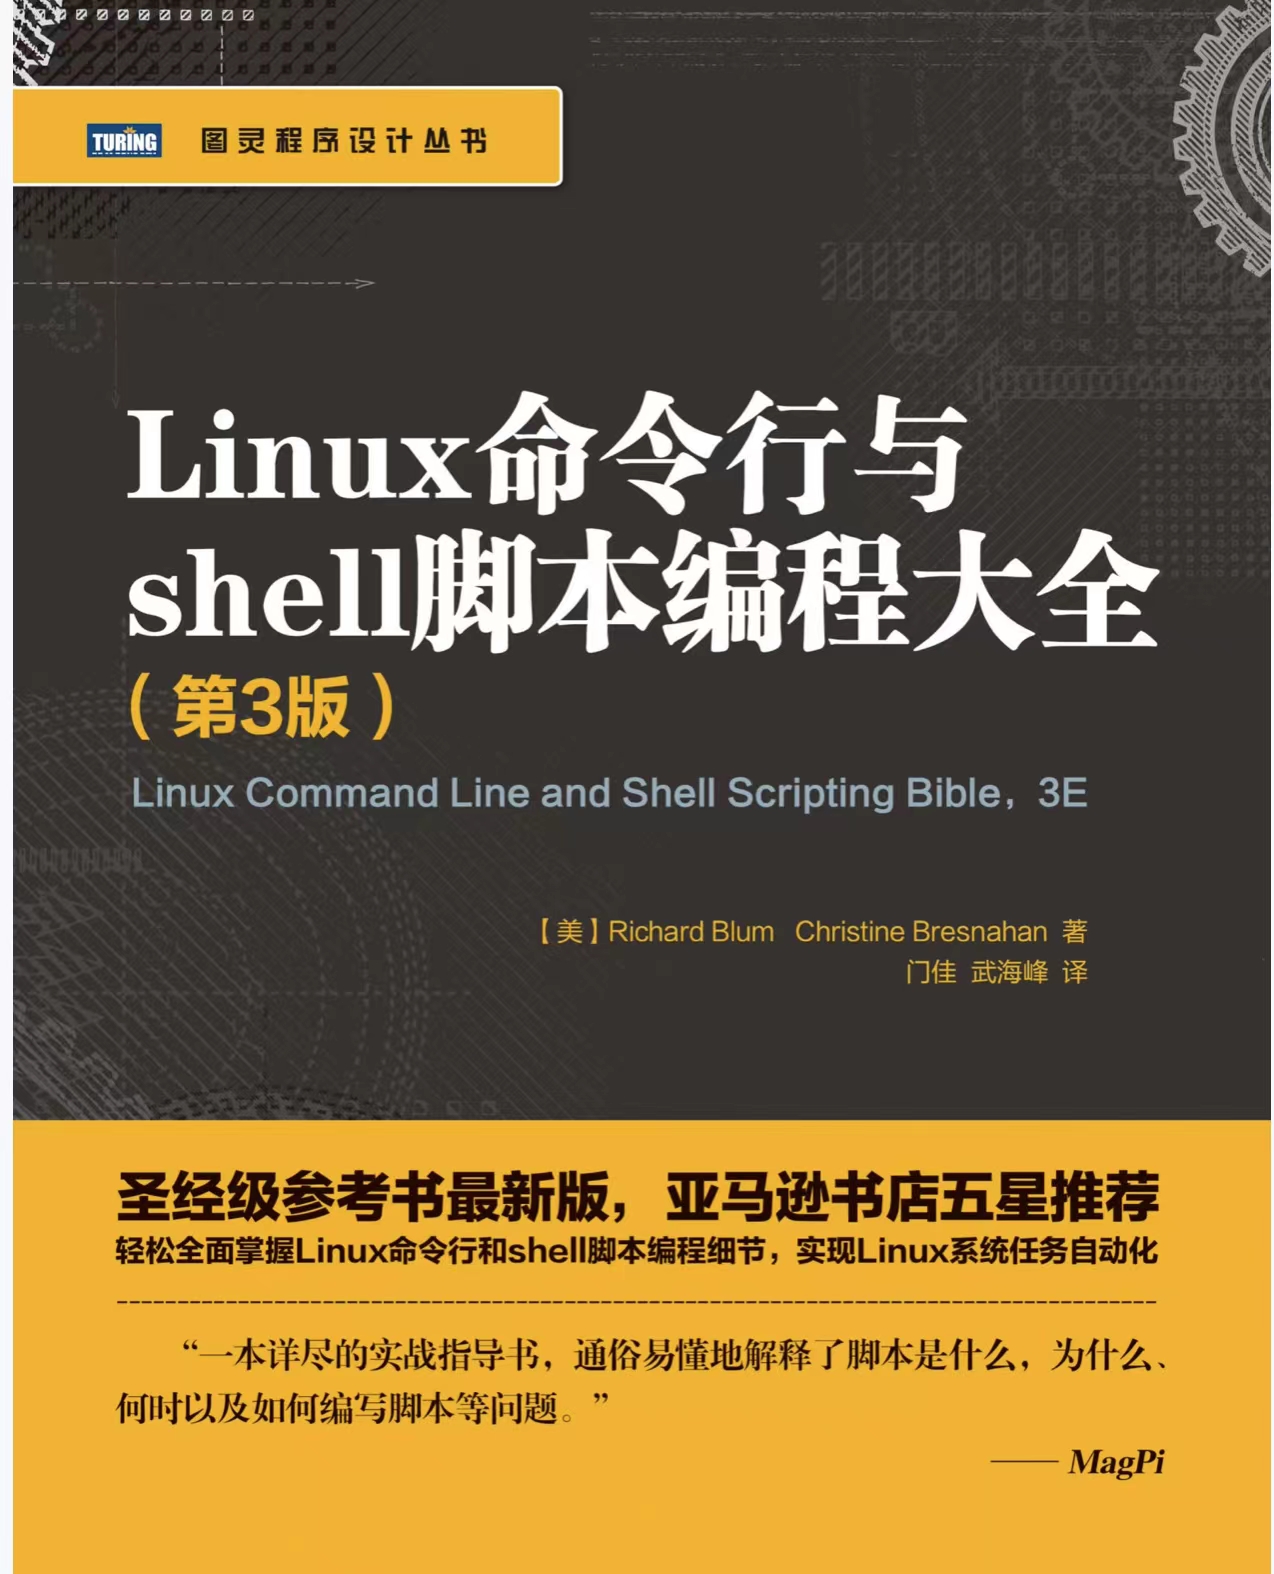 阿里巴巴《Linux命令行与shell脚本编程大全》